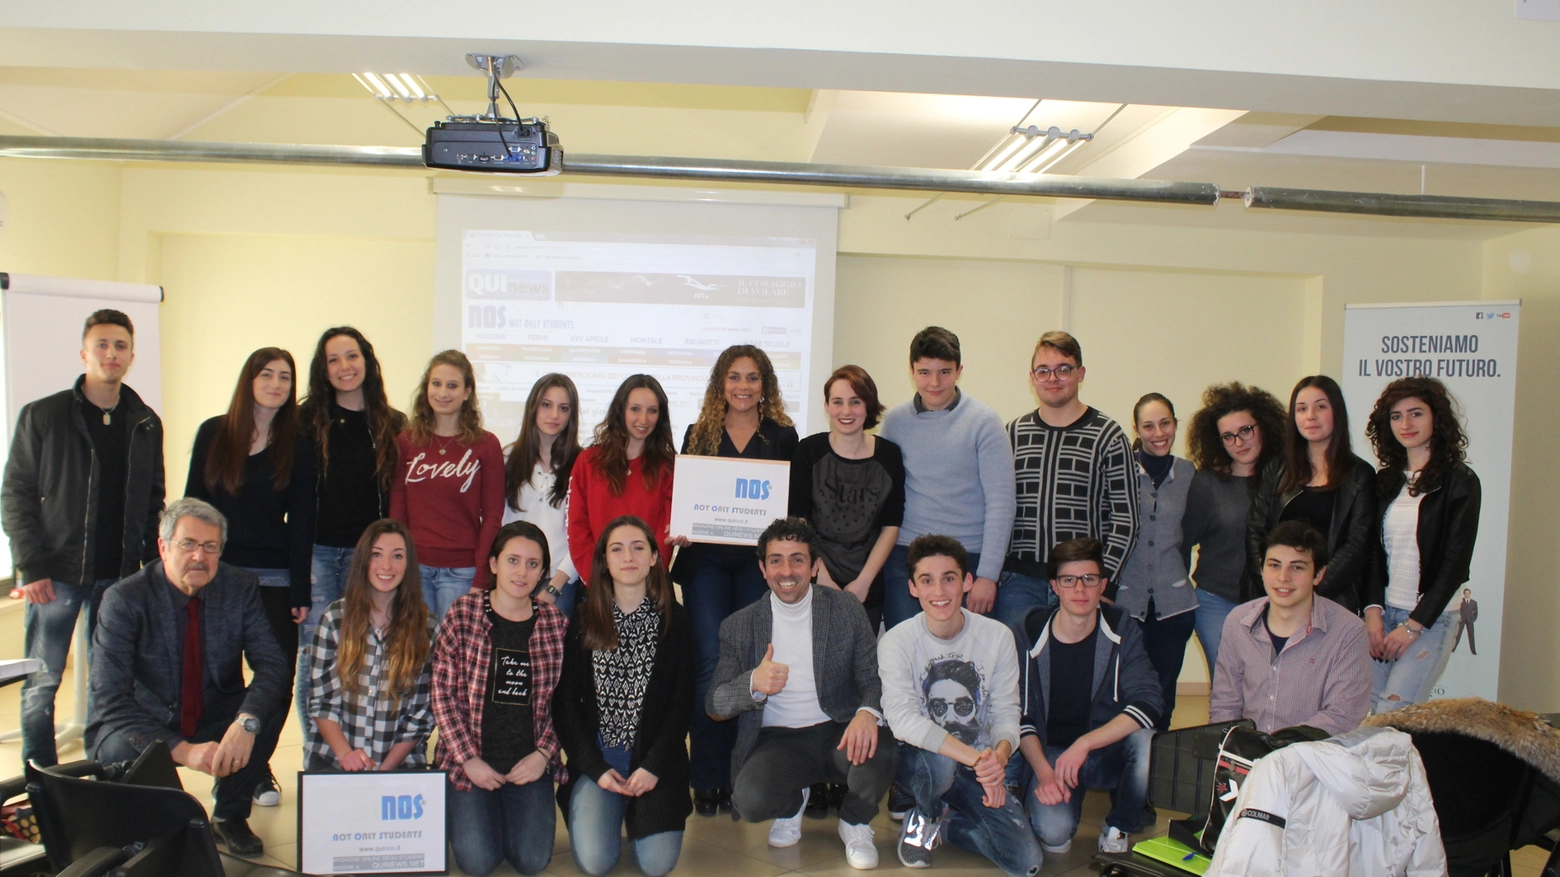 Gli studenti insieme alla presidente Federica Grassini